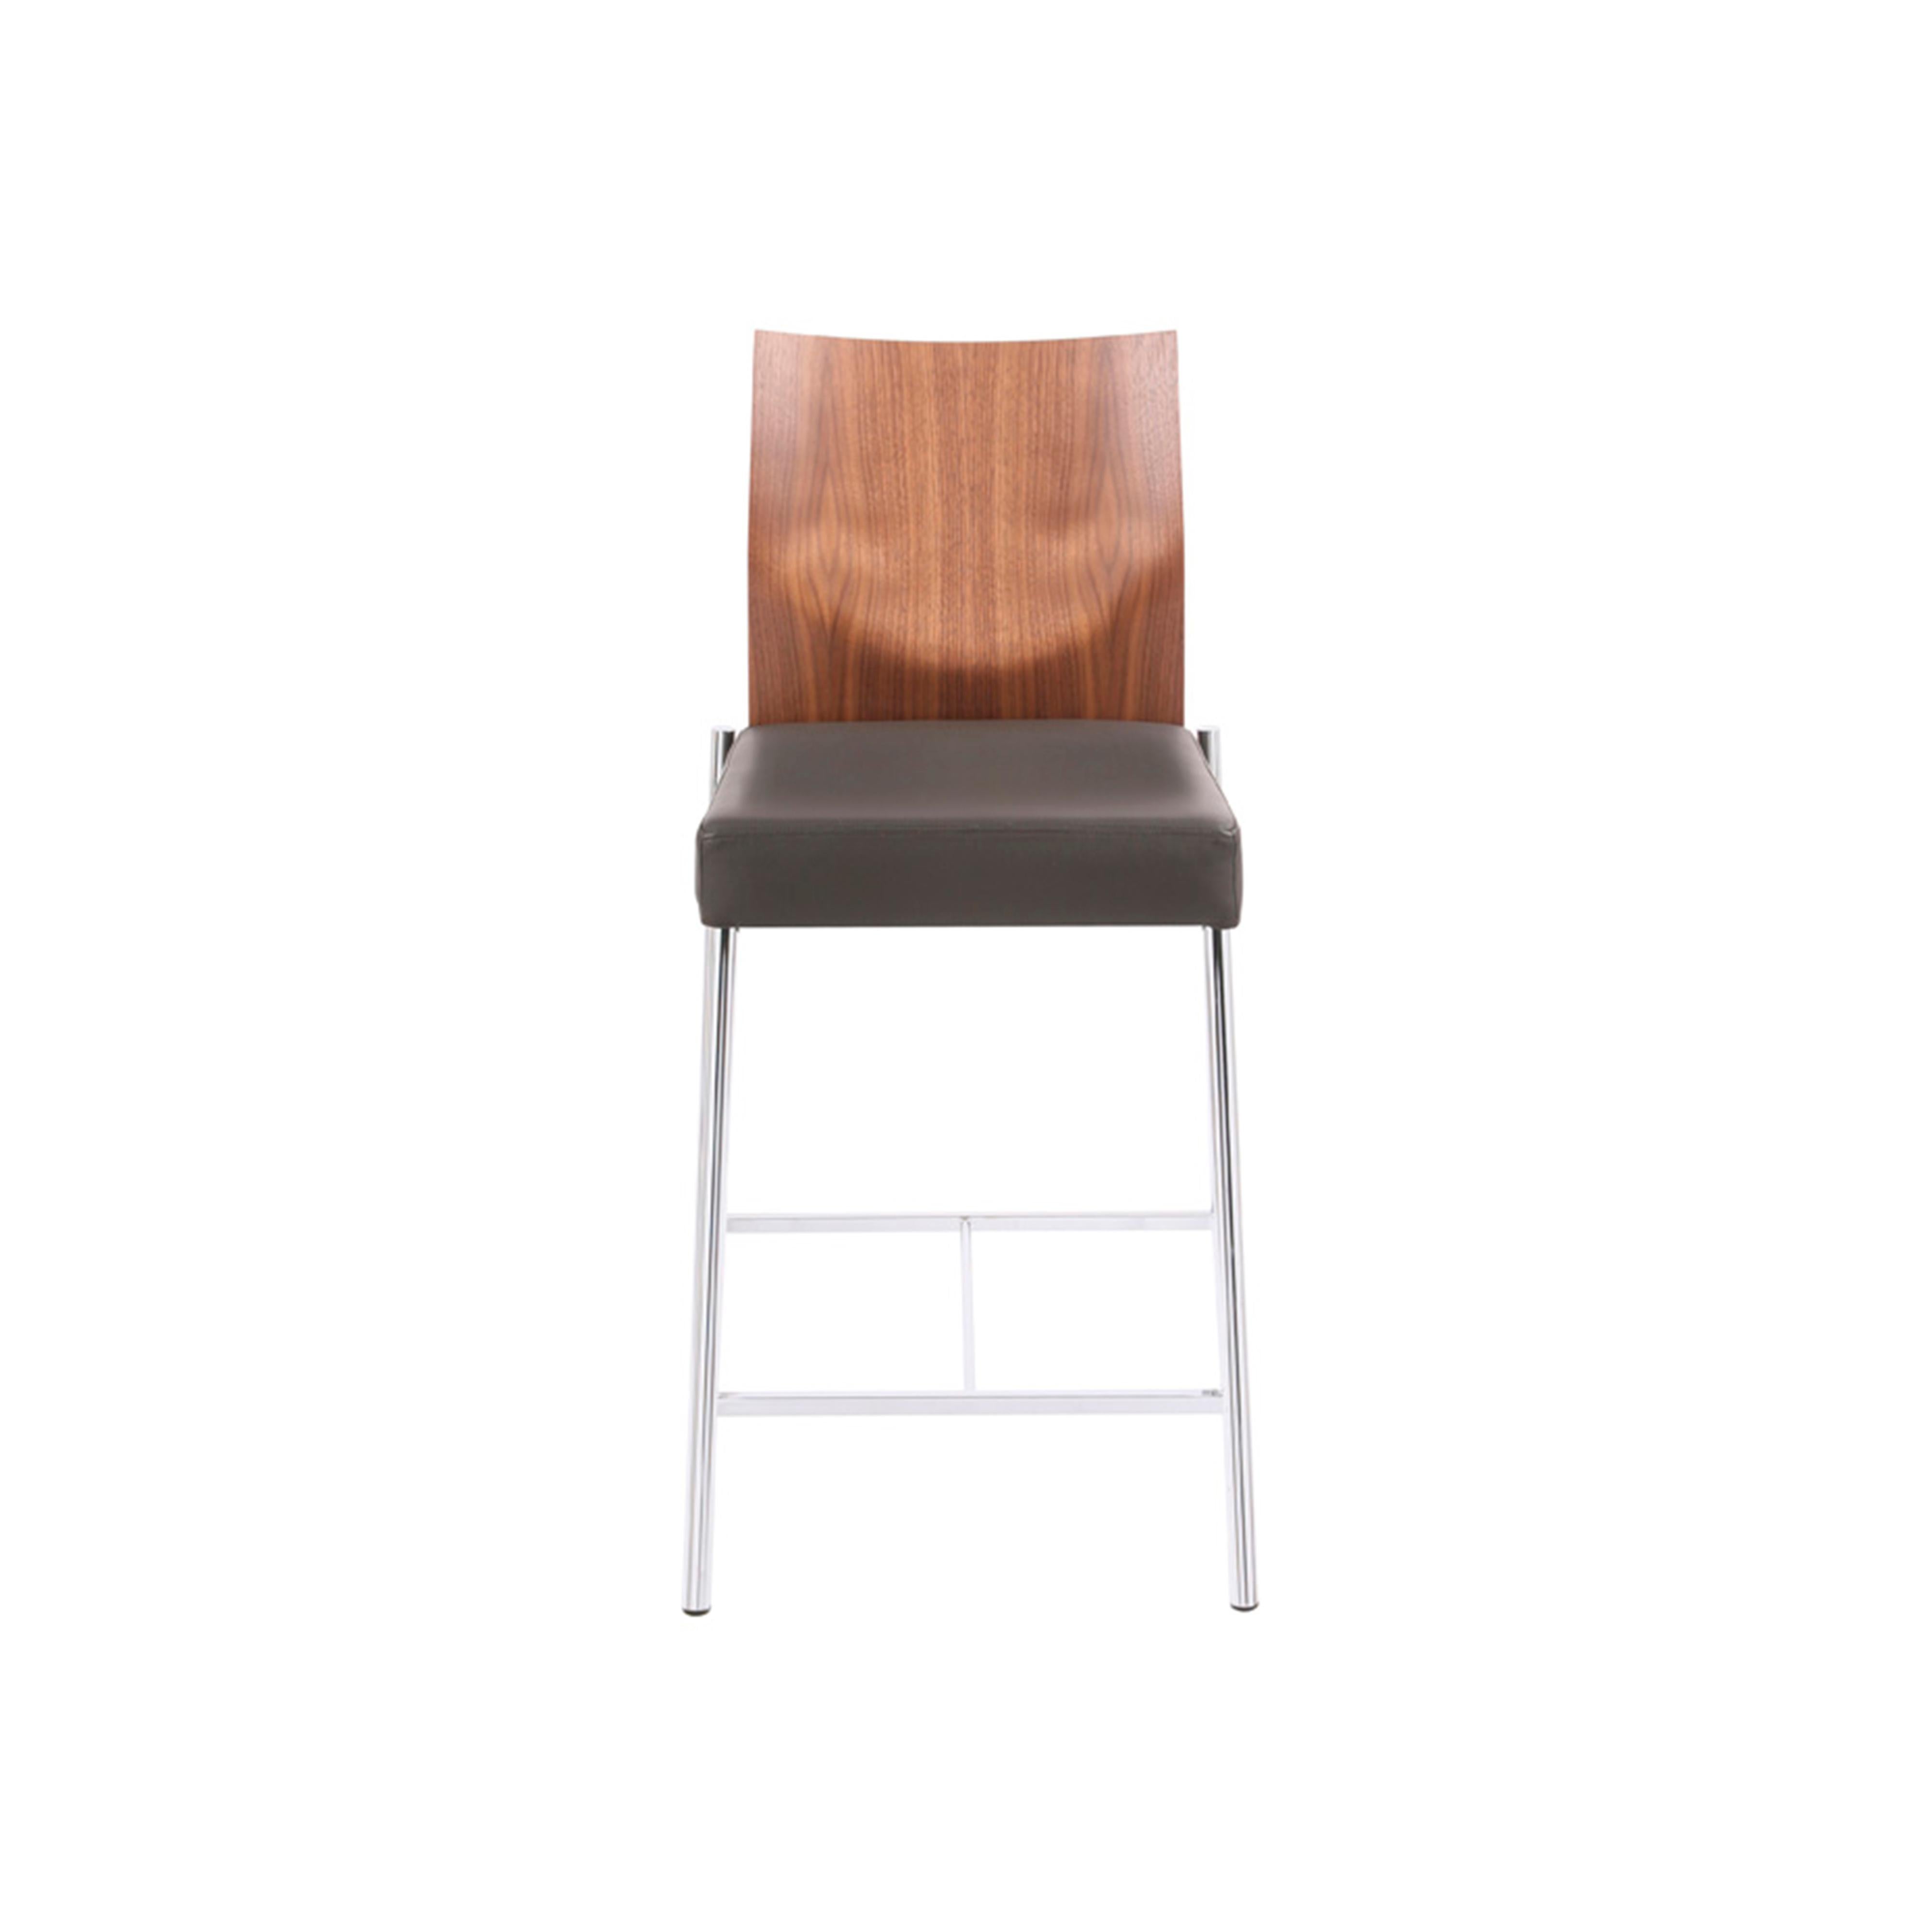 Un concept - de nombreux prototypes : qu'il s'agisse de chaises classiques, de cabriolets ou de tabourets de bar, y compris ceux à ressort pneumatique, GLOOH, en plus d'offrir une gamme étendue et un grand confort, se distingue par un design